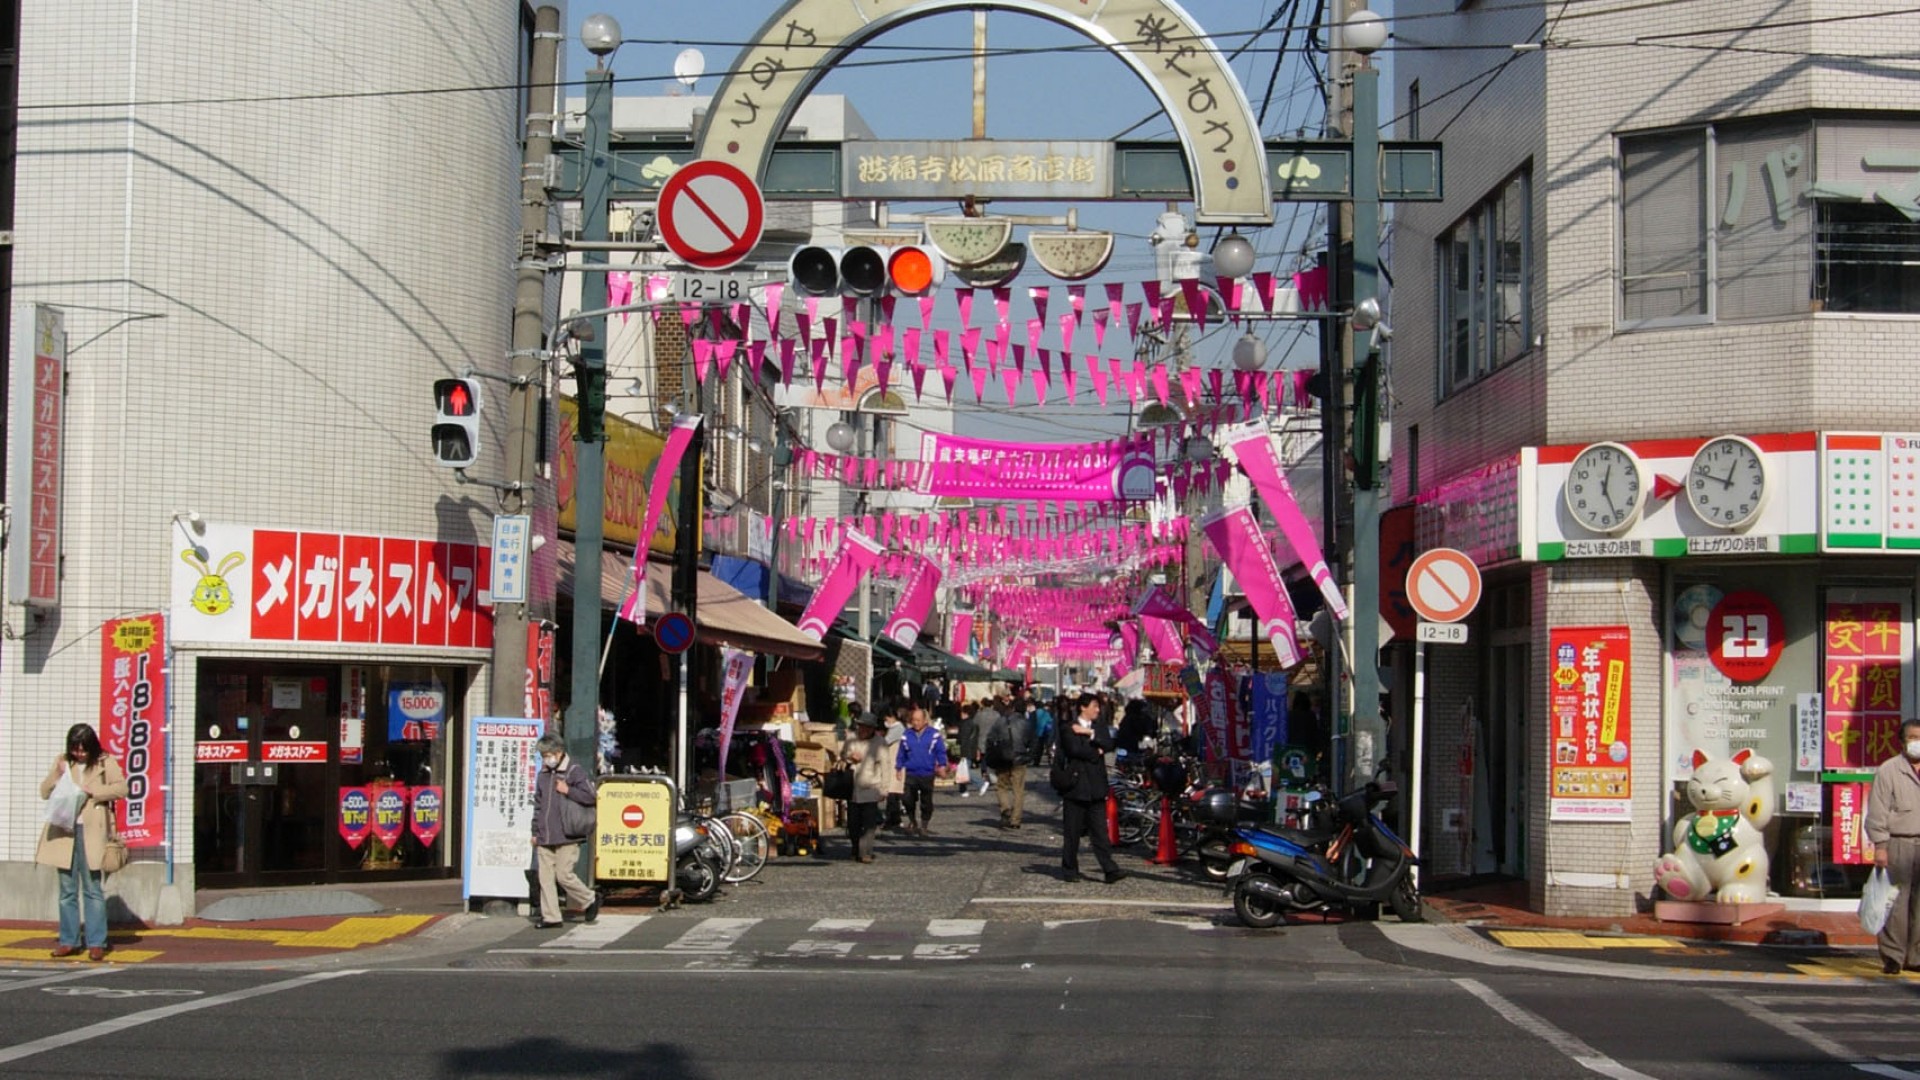 ถนนช้อปปิ้งโยโกฮามะ โคฟุคุจิ มัตสึบาระ